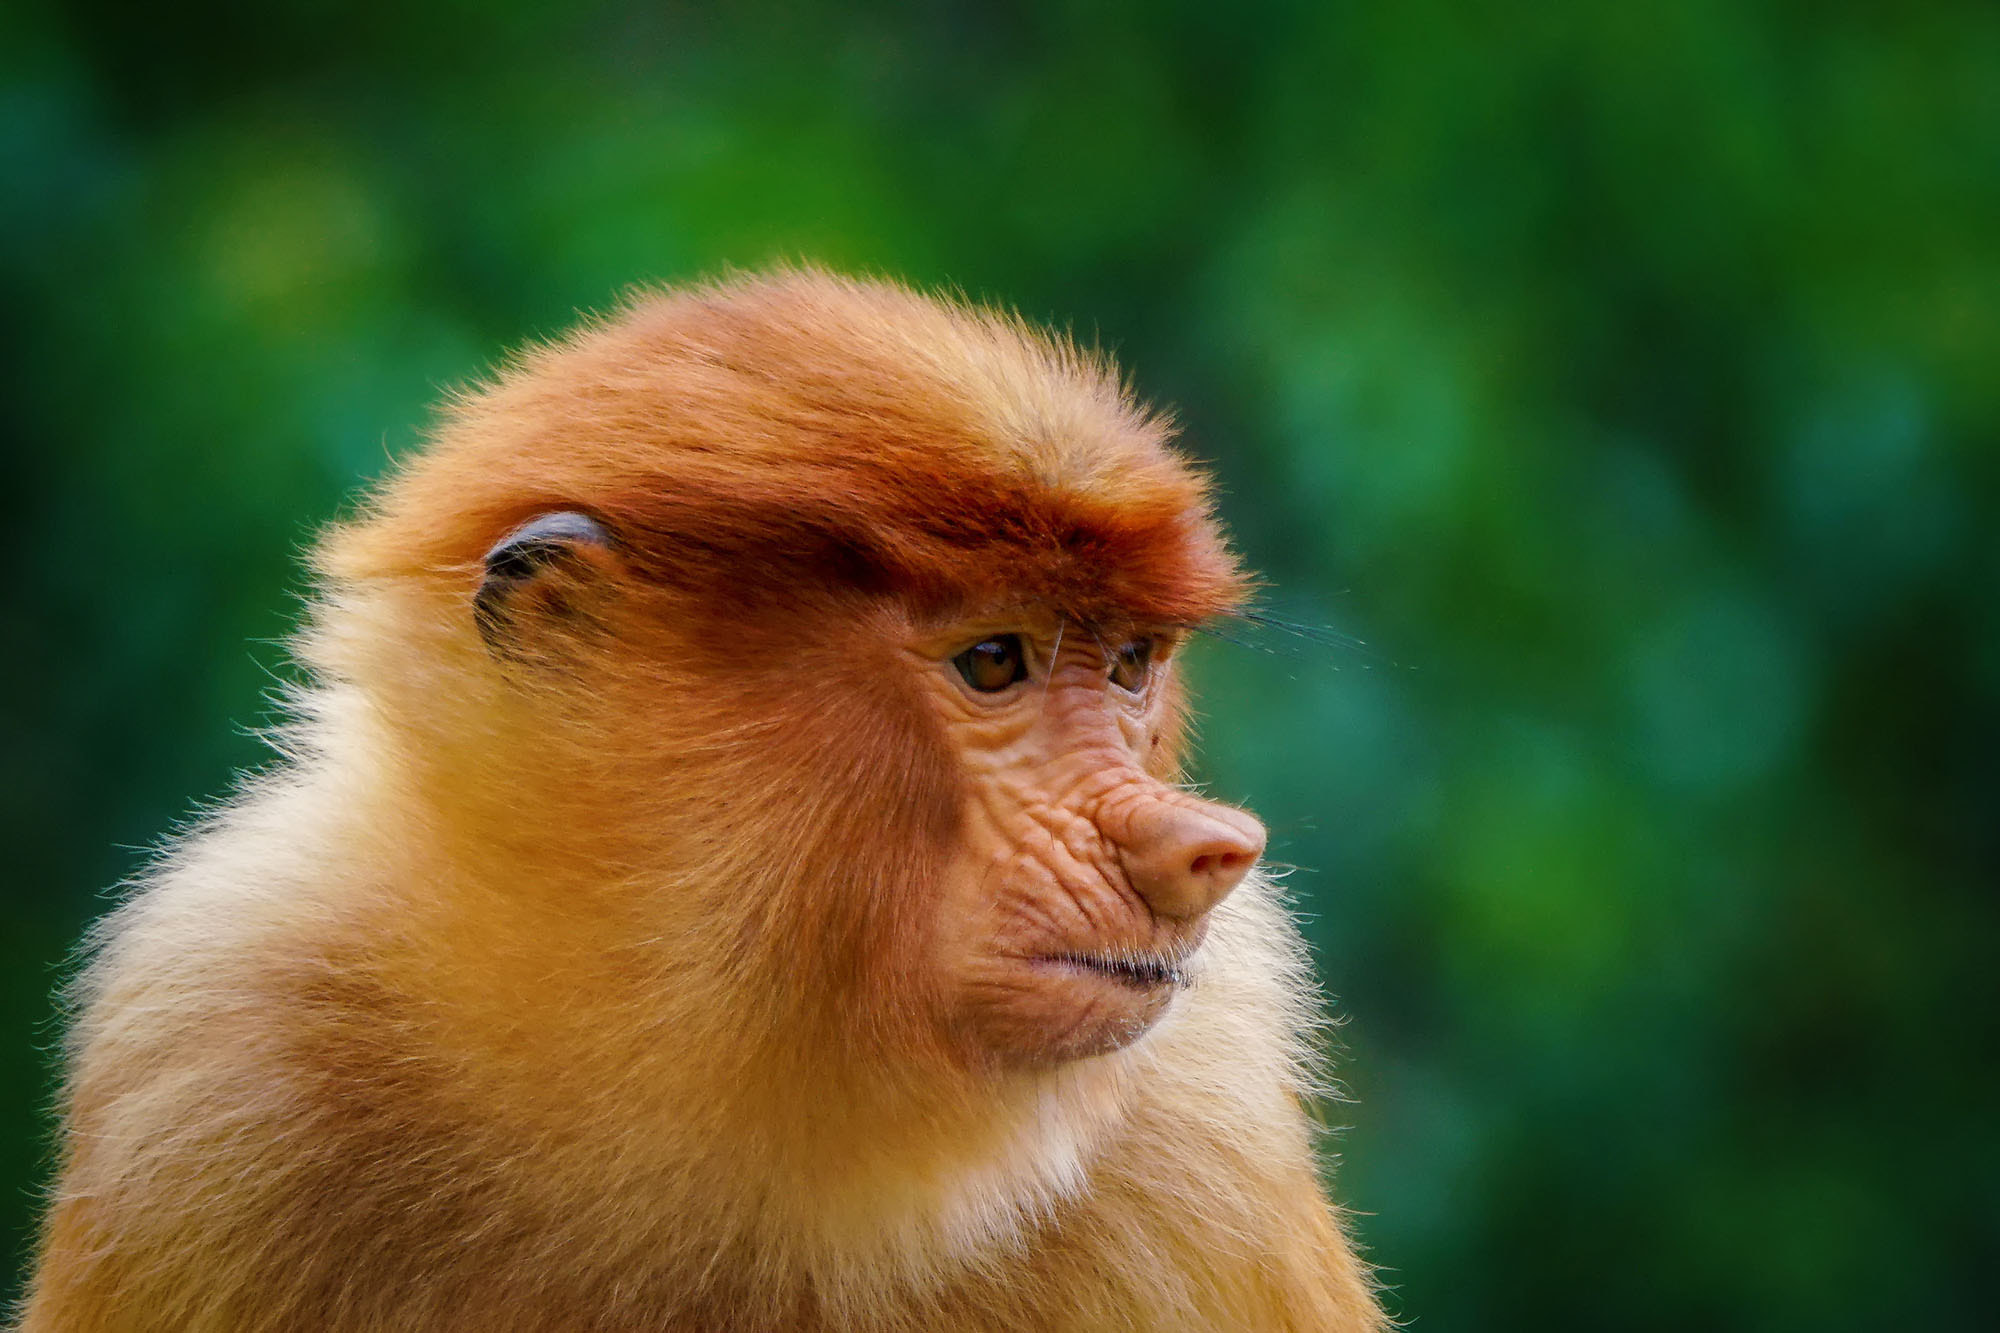 Sony ILCA-77M2 sample photo. Proboscis monkey (female) photography